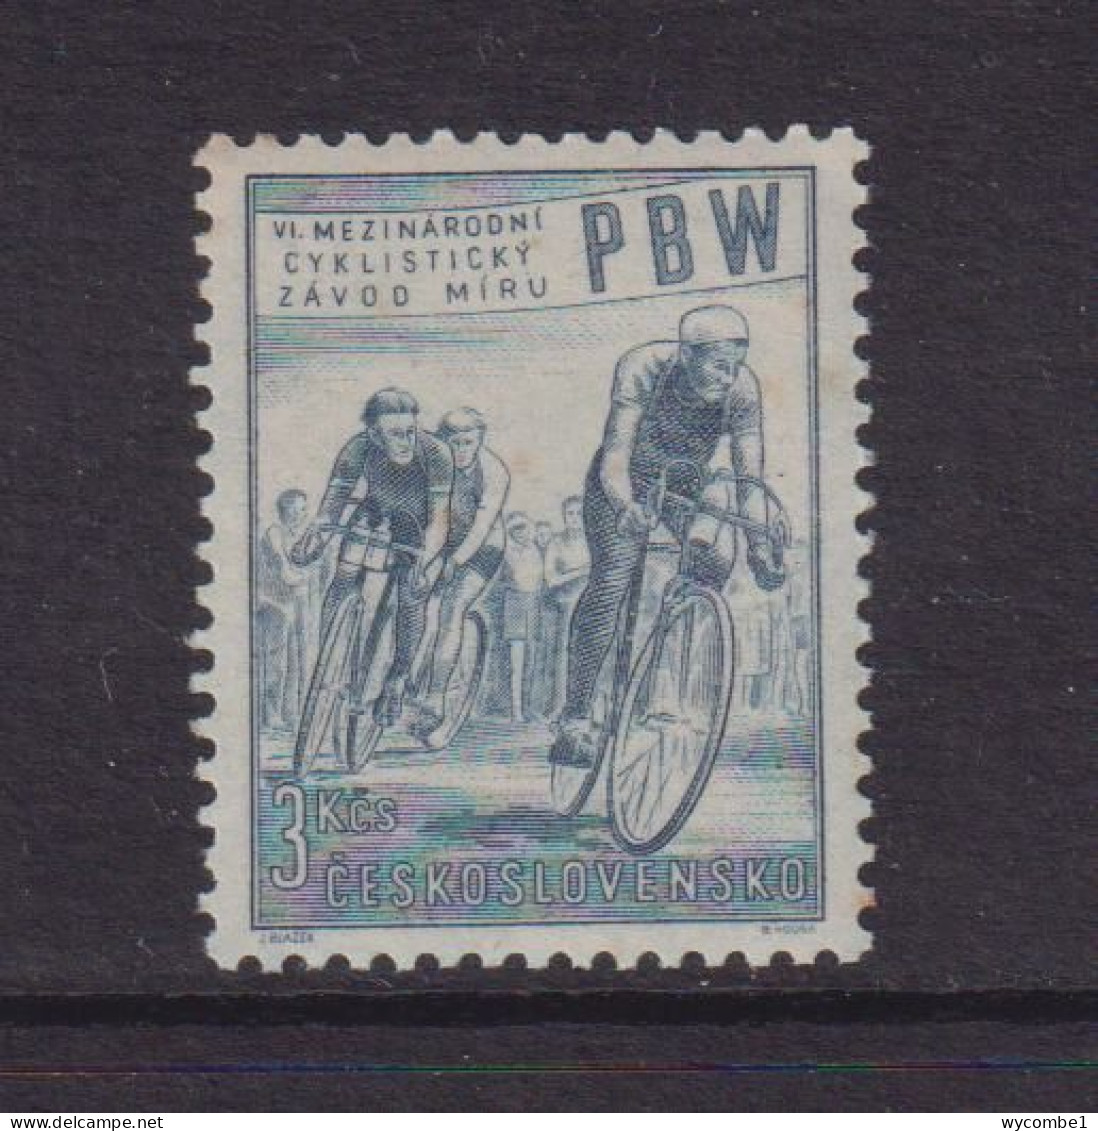 CZECHOSLOVAKIA  - 1953  Cycle Race  3k  Never Hinged Mint - Nuovi